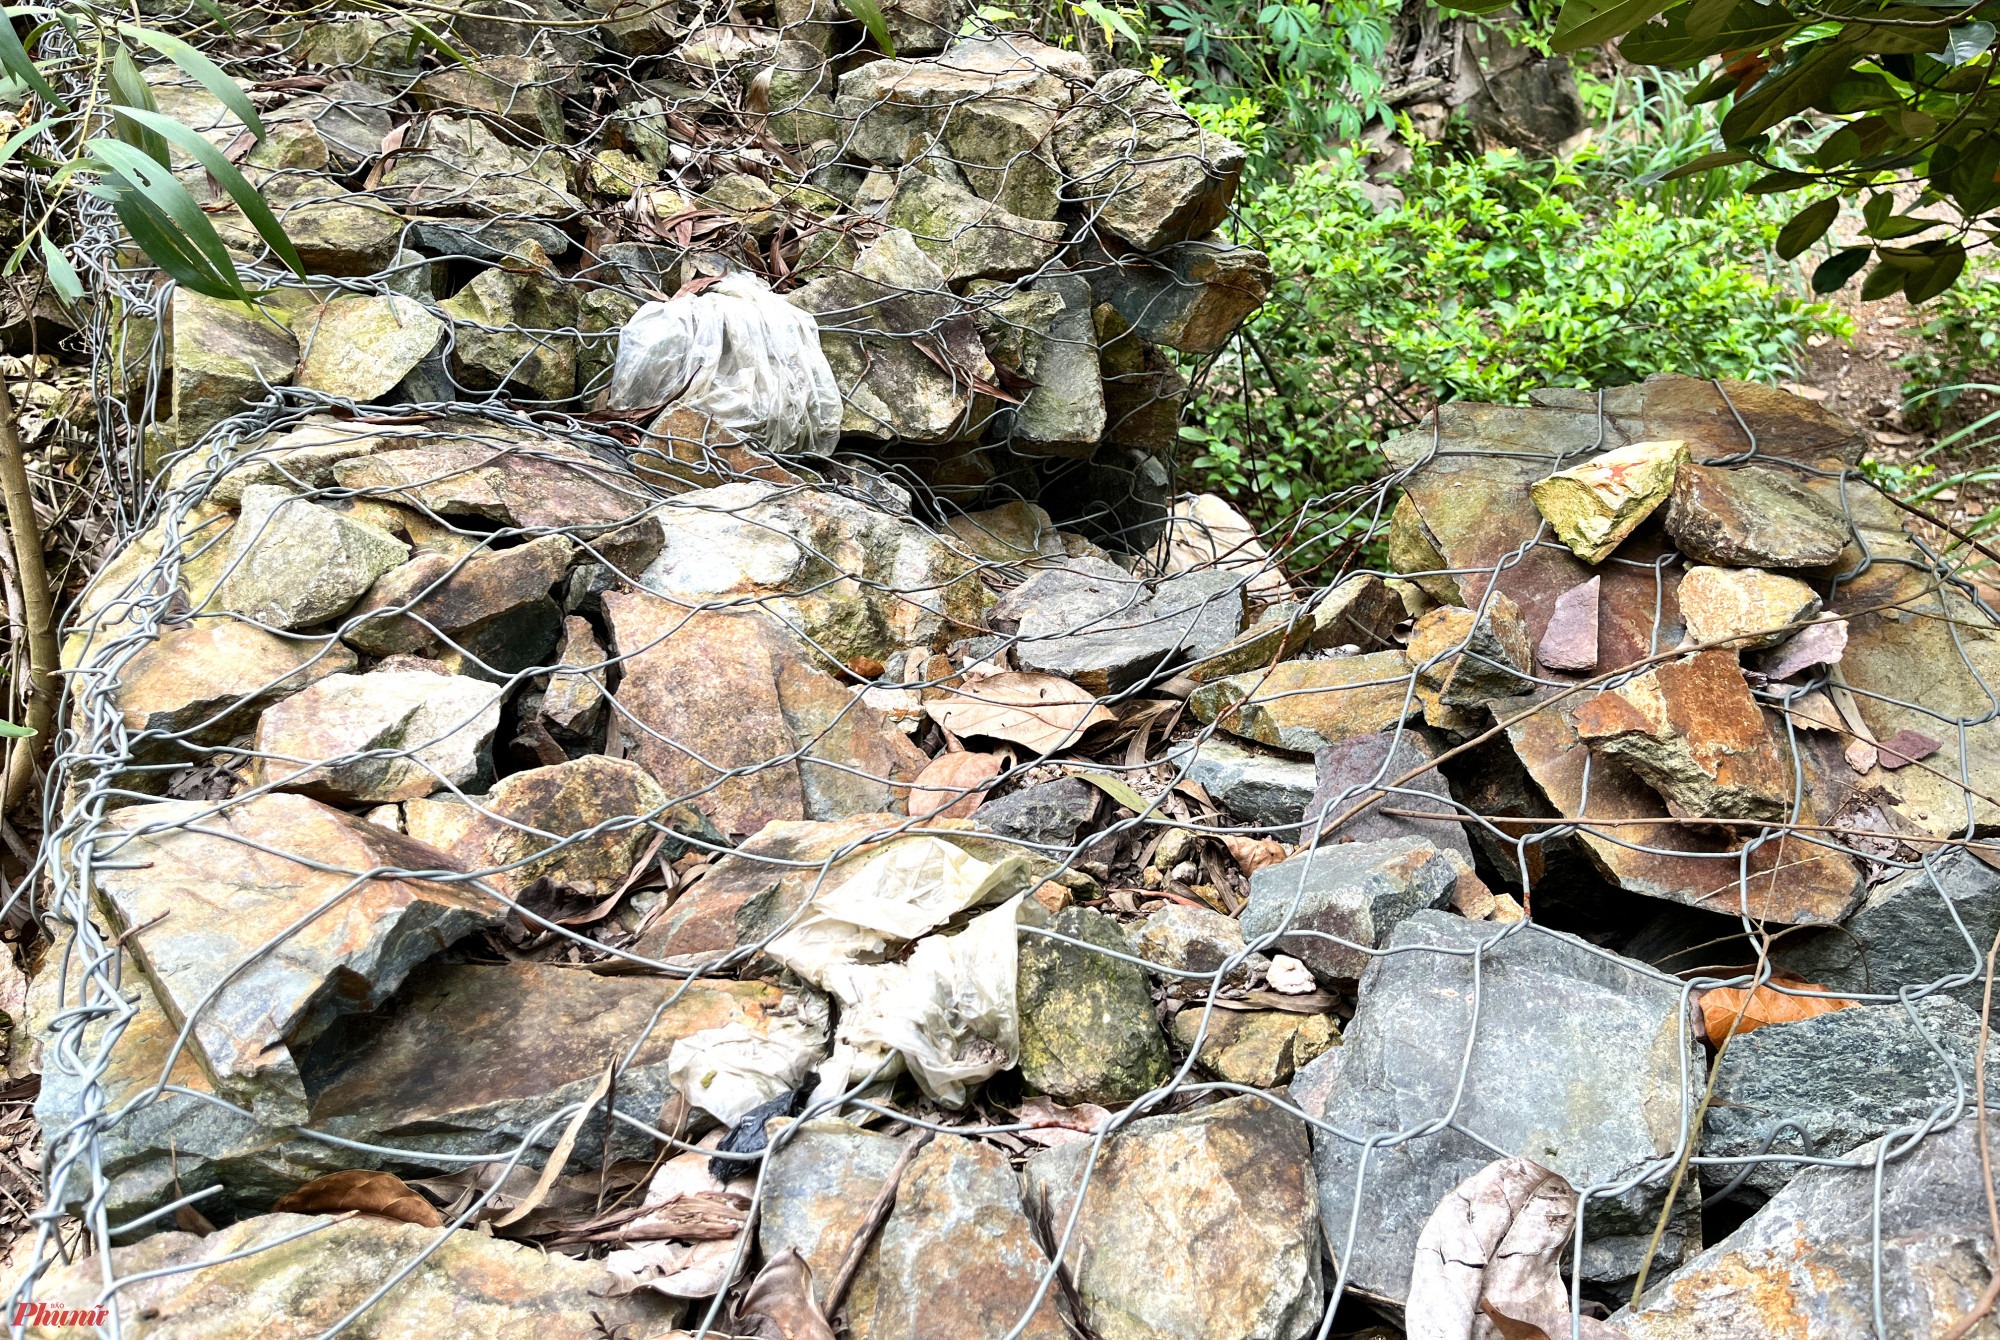 Tuy nhiên hiện kè đá này không còn đảm bảo an toàn trước nguy cơ sạt lở nghiêm trọng ở khu vực rú Rày, rú Rậm. Nhiều đoạn kè bị bị đá lăn từ đỉnh núi xuống văng vào làm vỡ, xiêu vẹo.